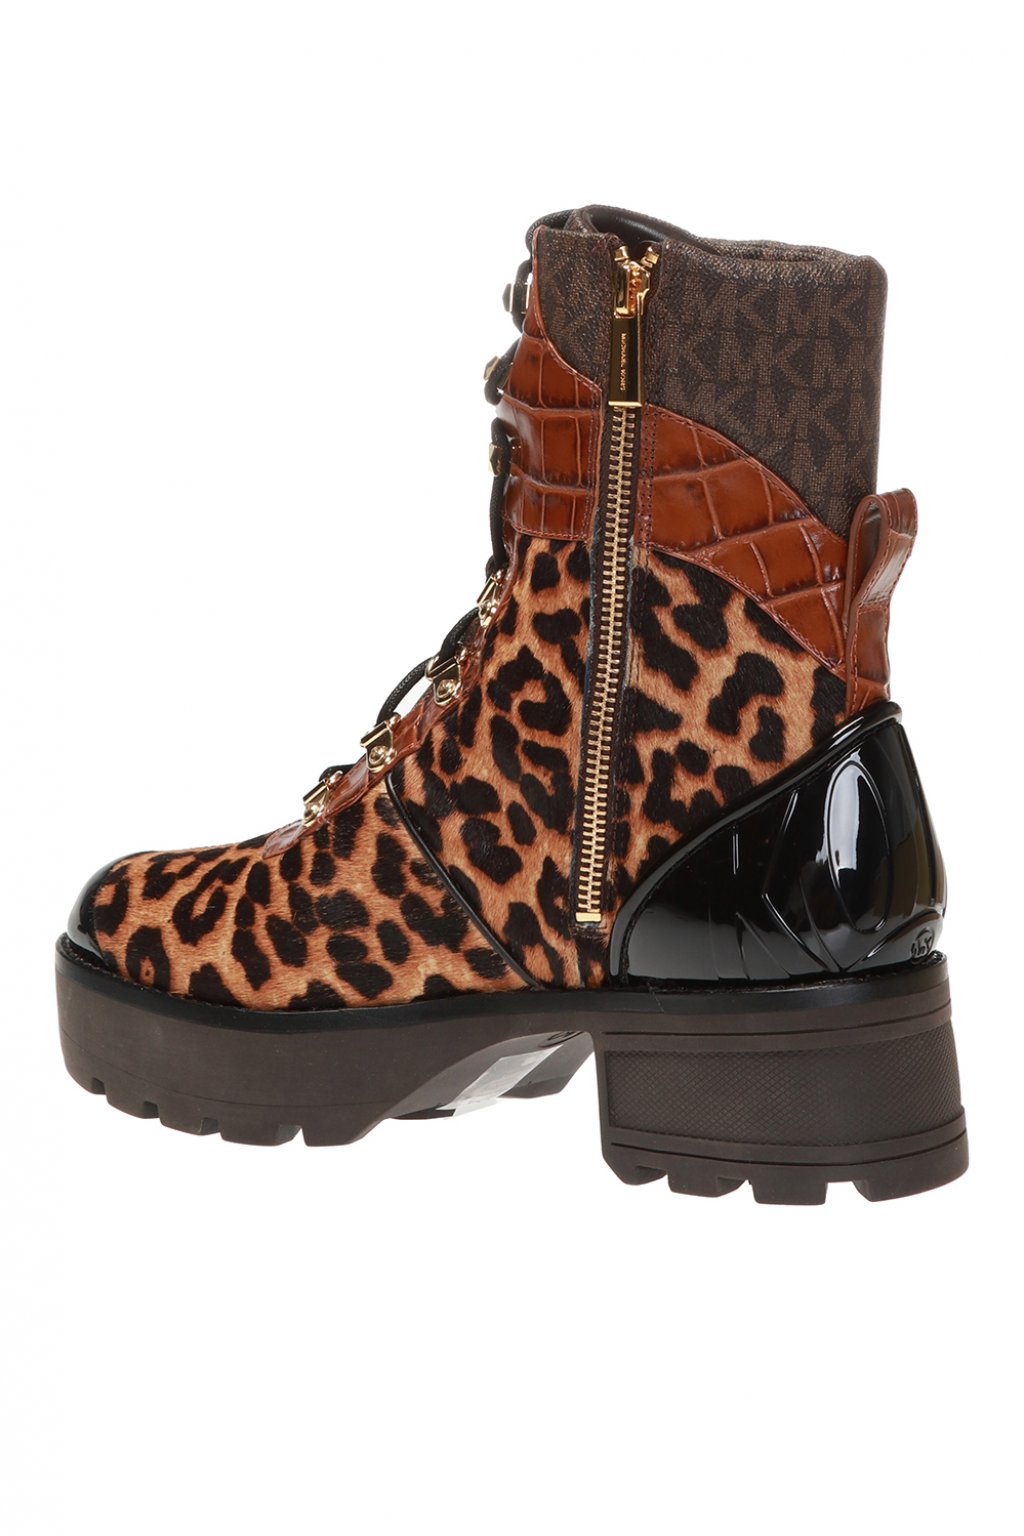 michael kors leopard ankle boots